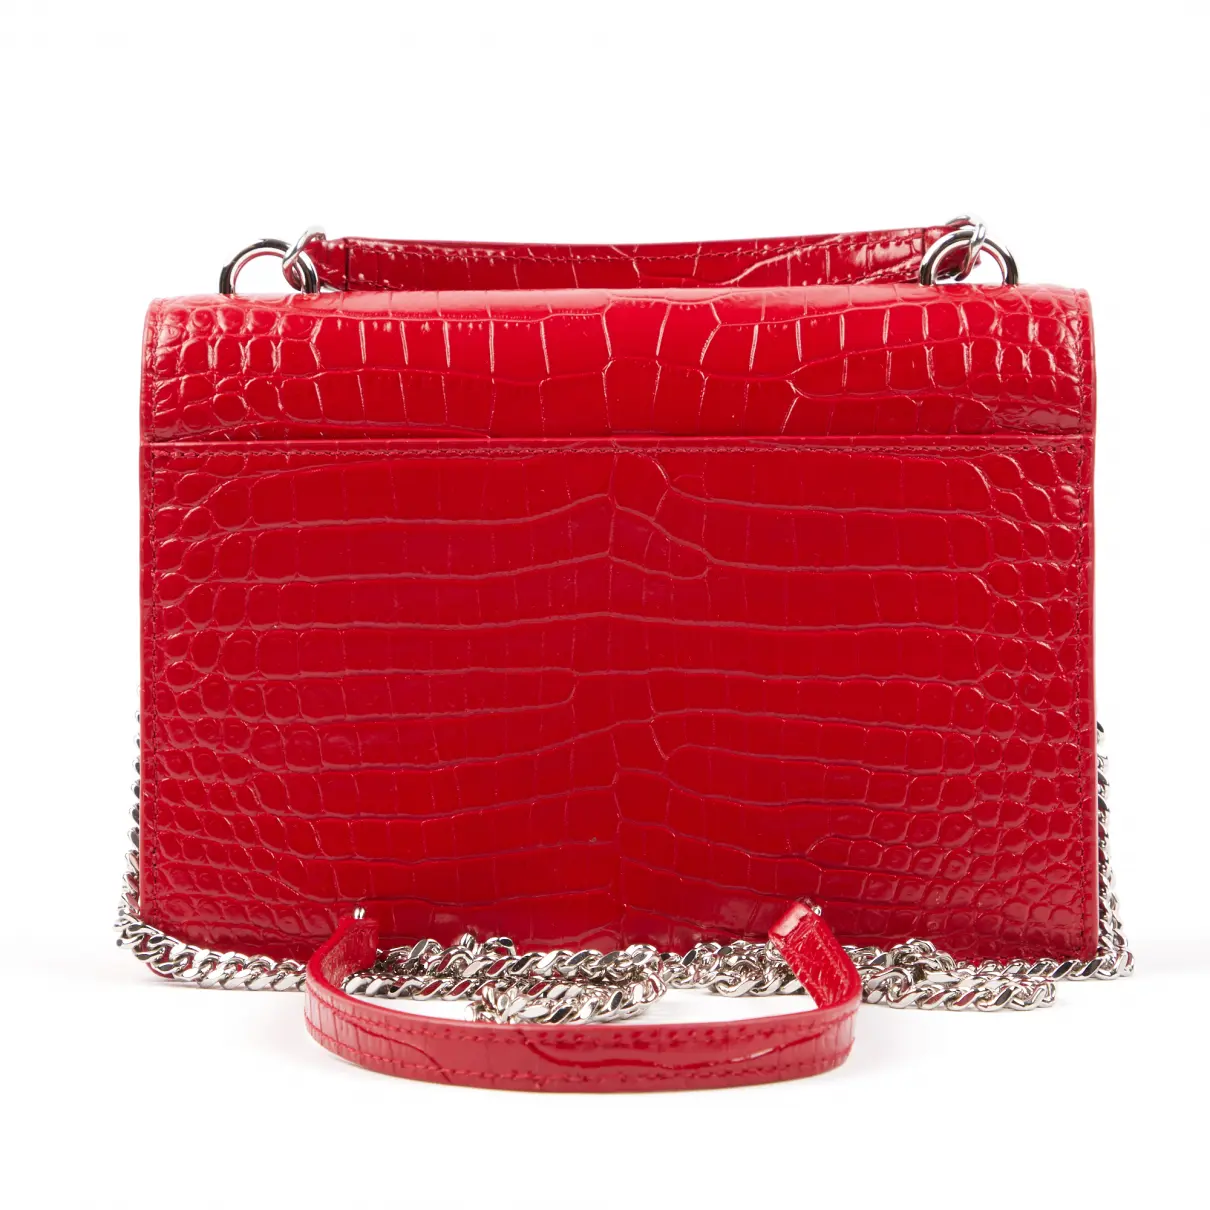 Luxury Saint Laurent Handbags Women